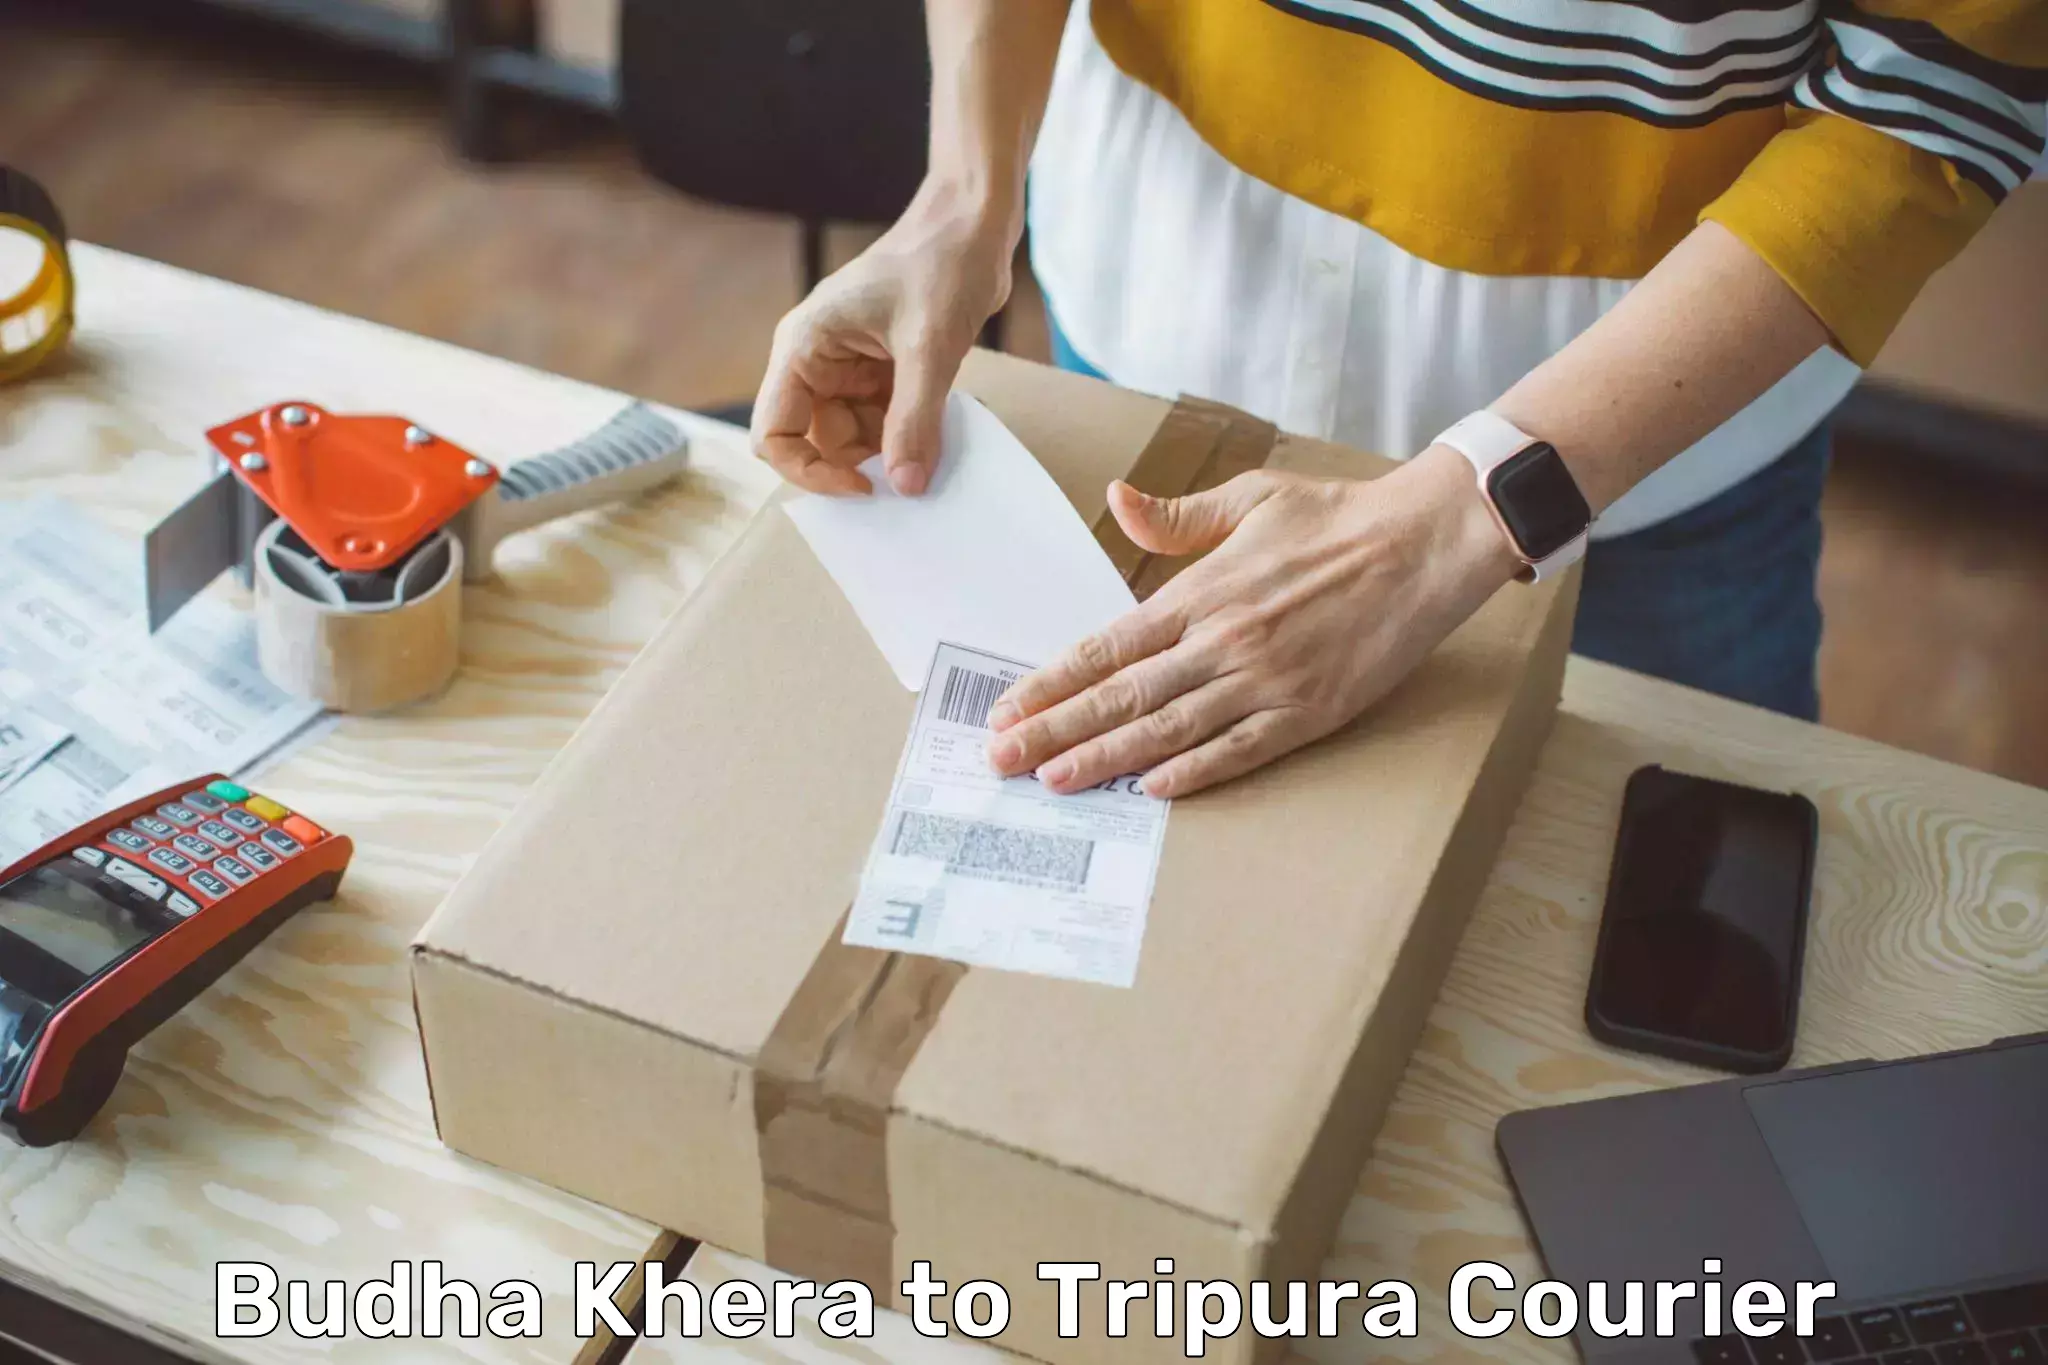 Easy return solutions Budha Khera to Tripura